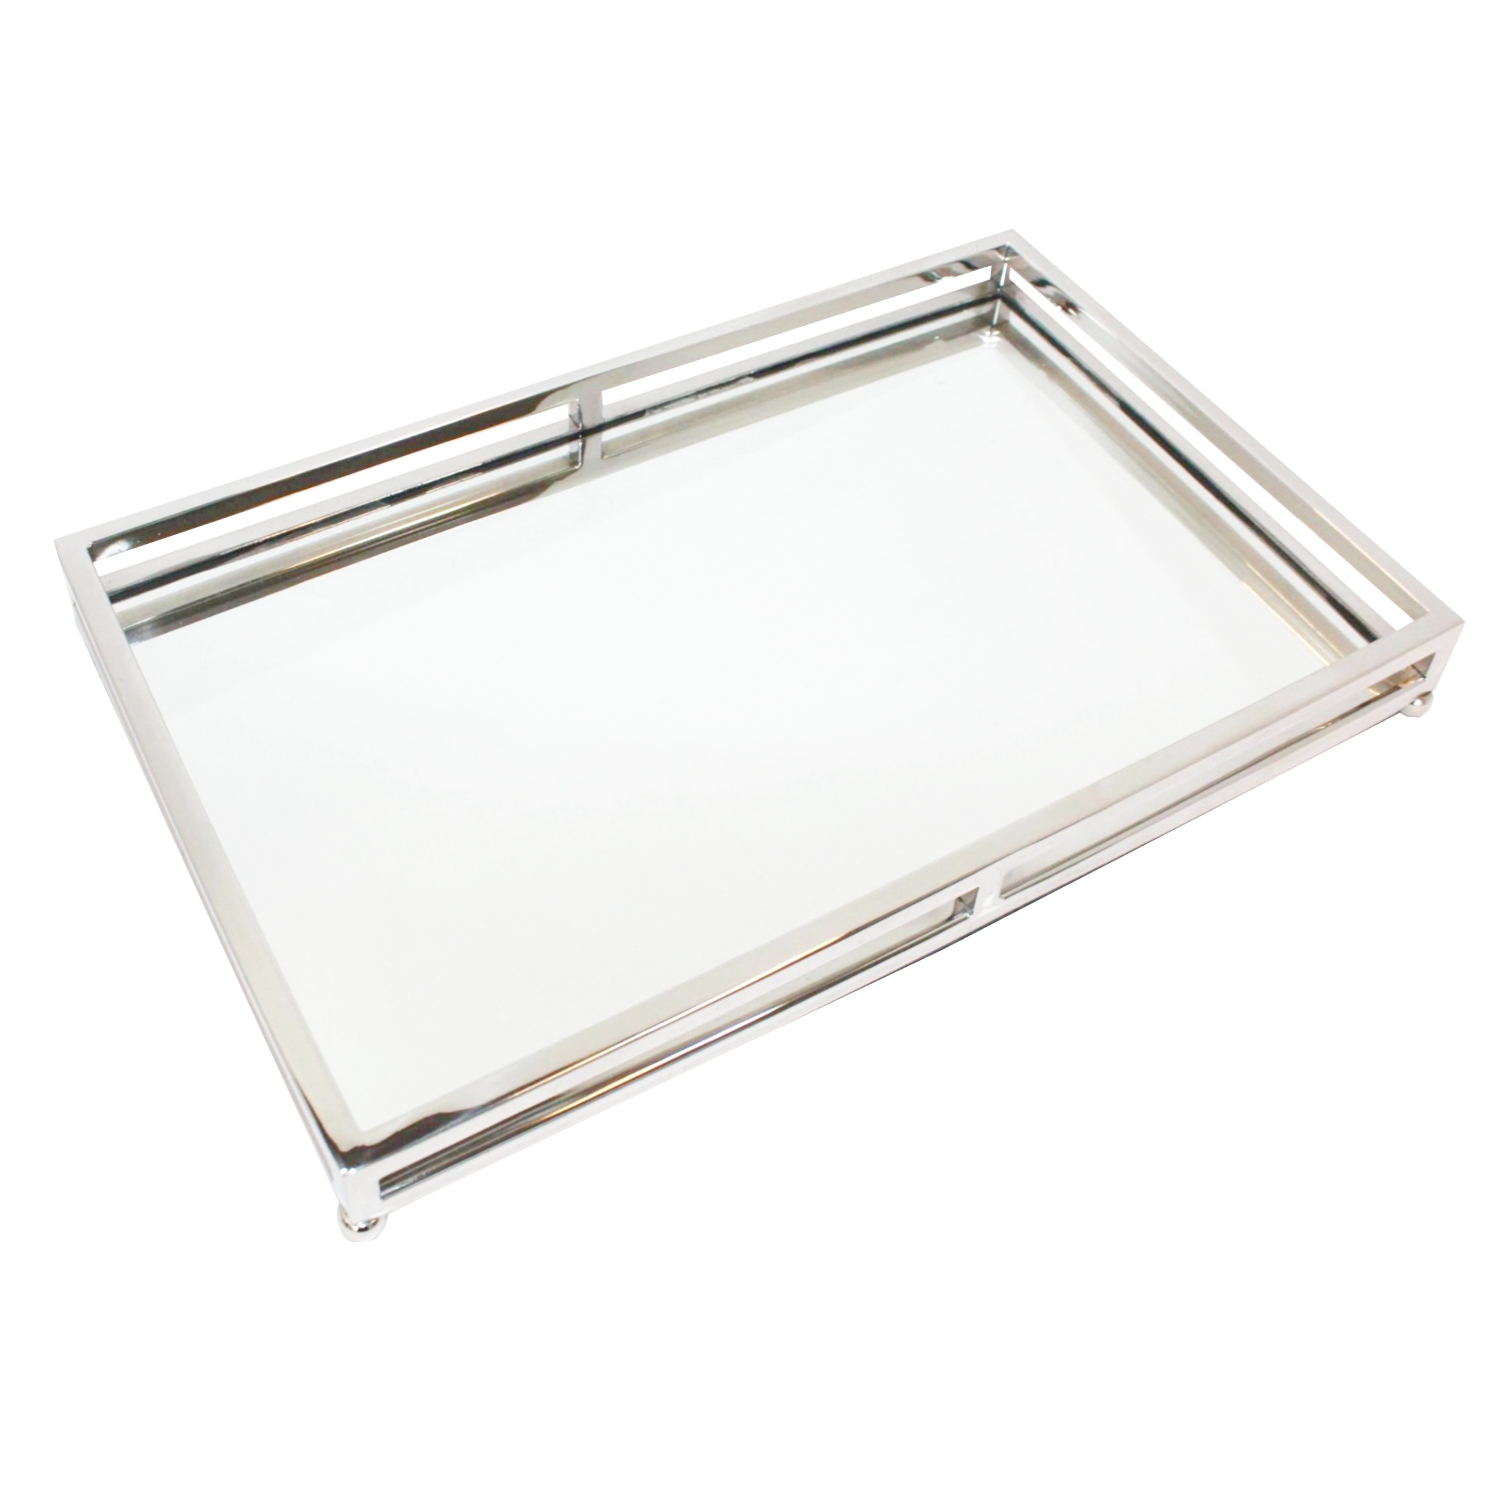 Edles Tablett Edelstahl silber Spiegel Glas Flourou 41 – Art Luxury Interior länglich Design cm 